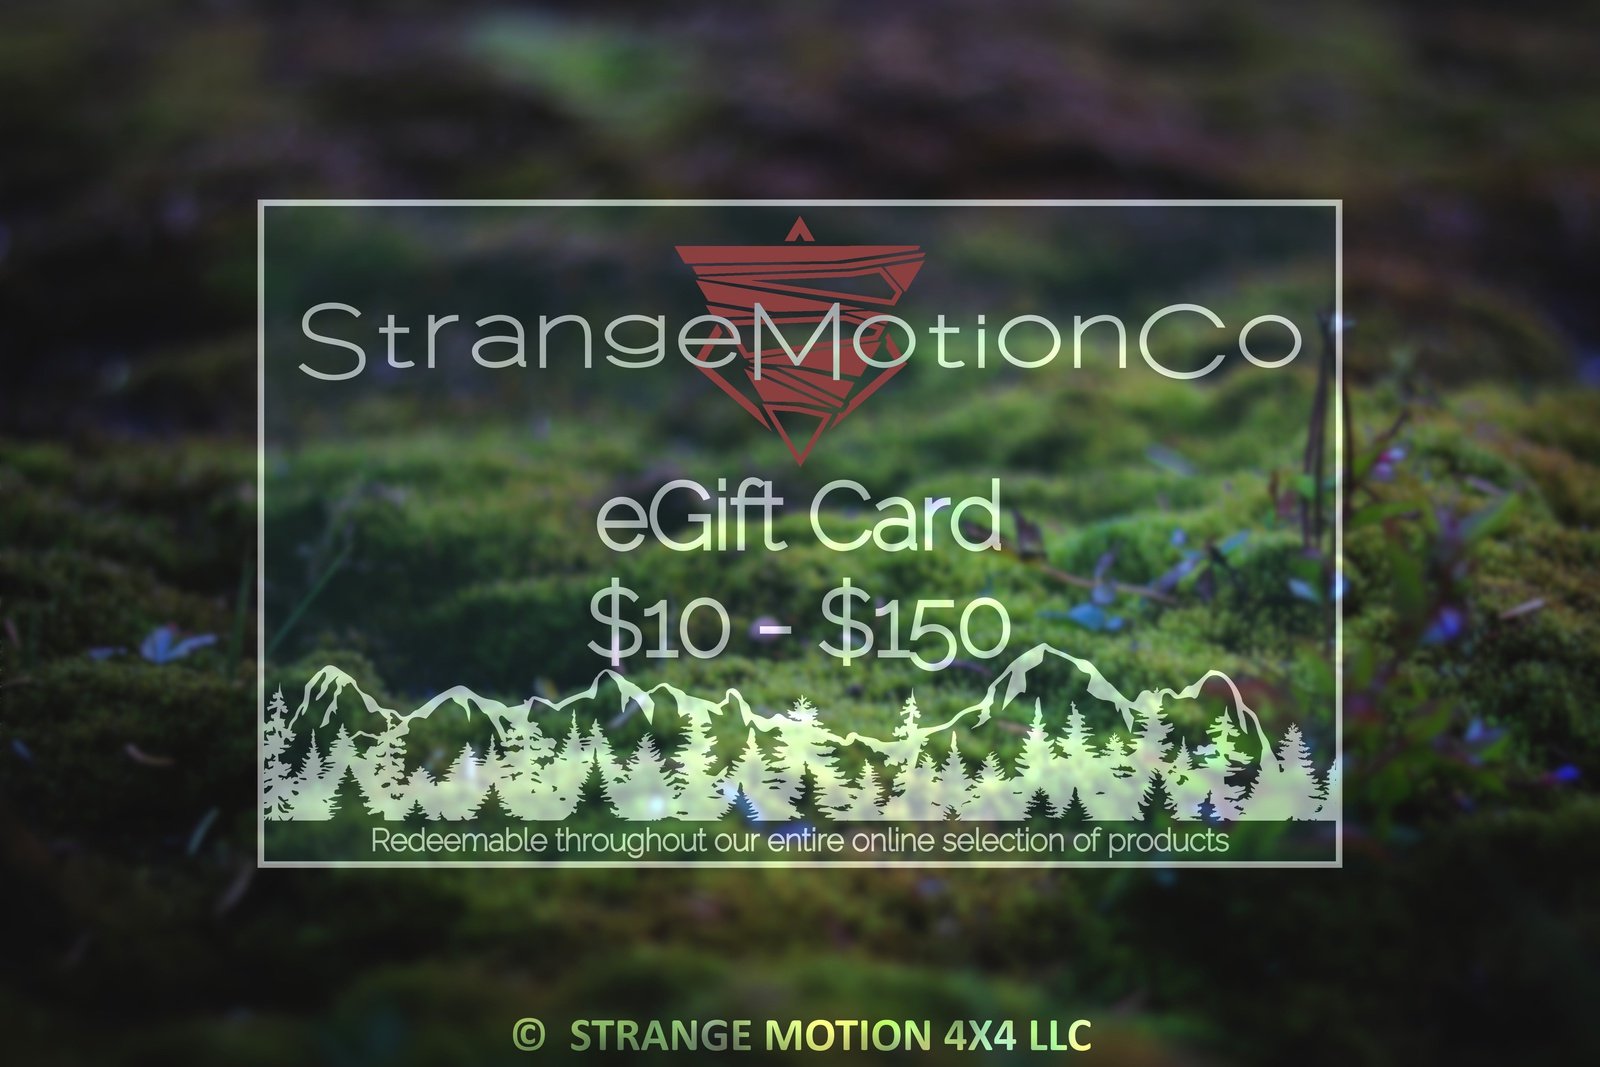 Strange Motion Co eGift Card, $10 - $150